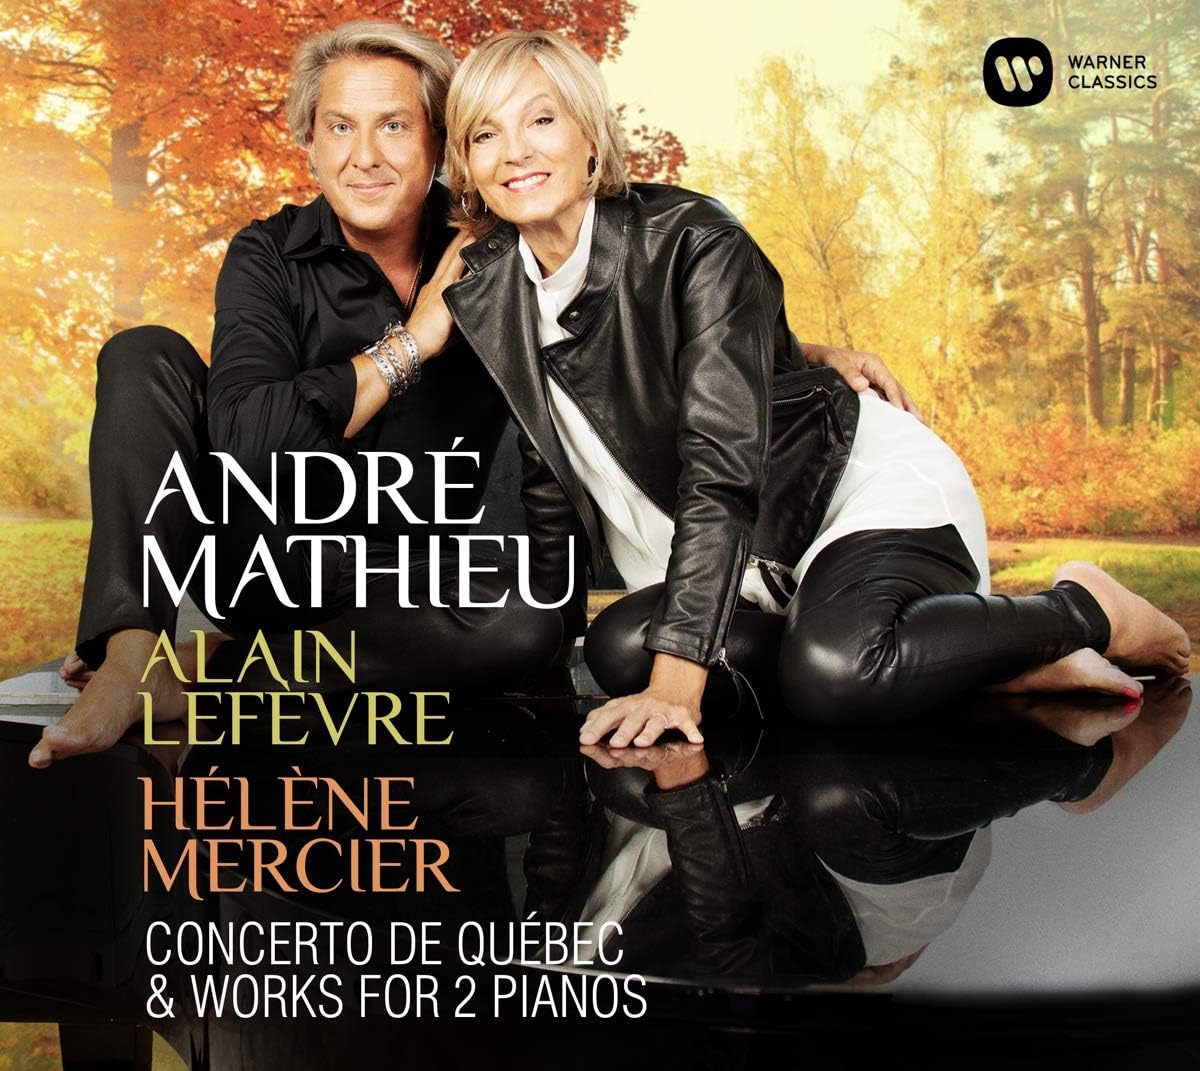 Concerto de Quebec & Works For 2 Pianos | Andre Mathieu, Alain Lefevre, Helene Mercier